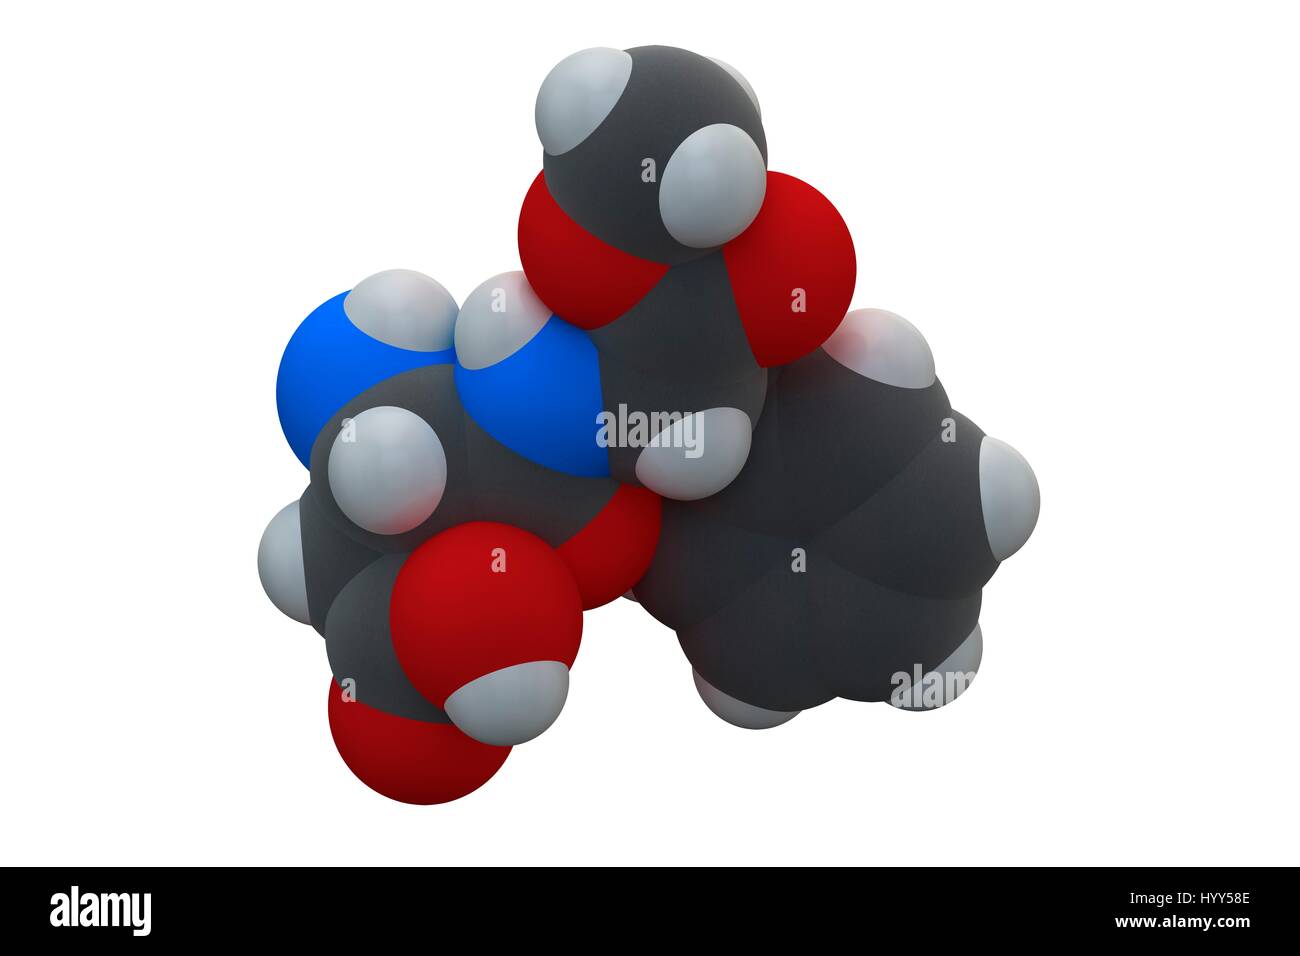 Aspartam-Süßstoff-Molekül (Zuckerersatz). Chemische Formel ist C14H18N2O5. Atome werden als Kugeln dargestellt: Kohlenstoff (grau), Wasserstoff (weiß), Stickstoff (blau), Sauerstoff (rot). Abbildung. Stockfoto